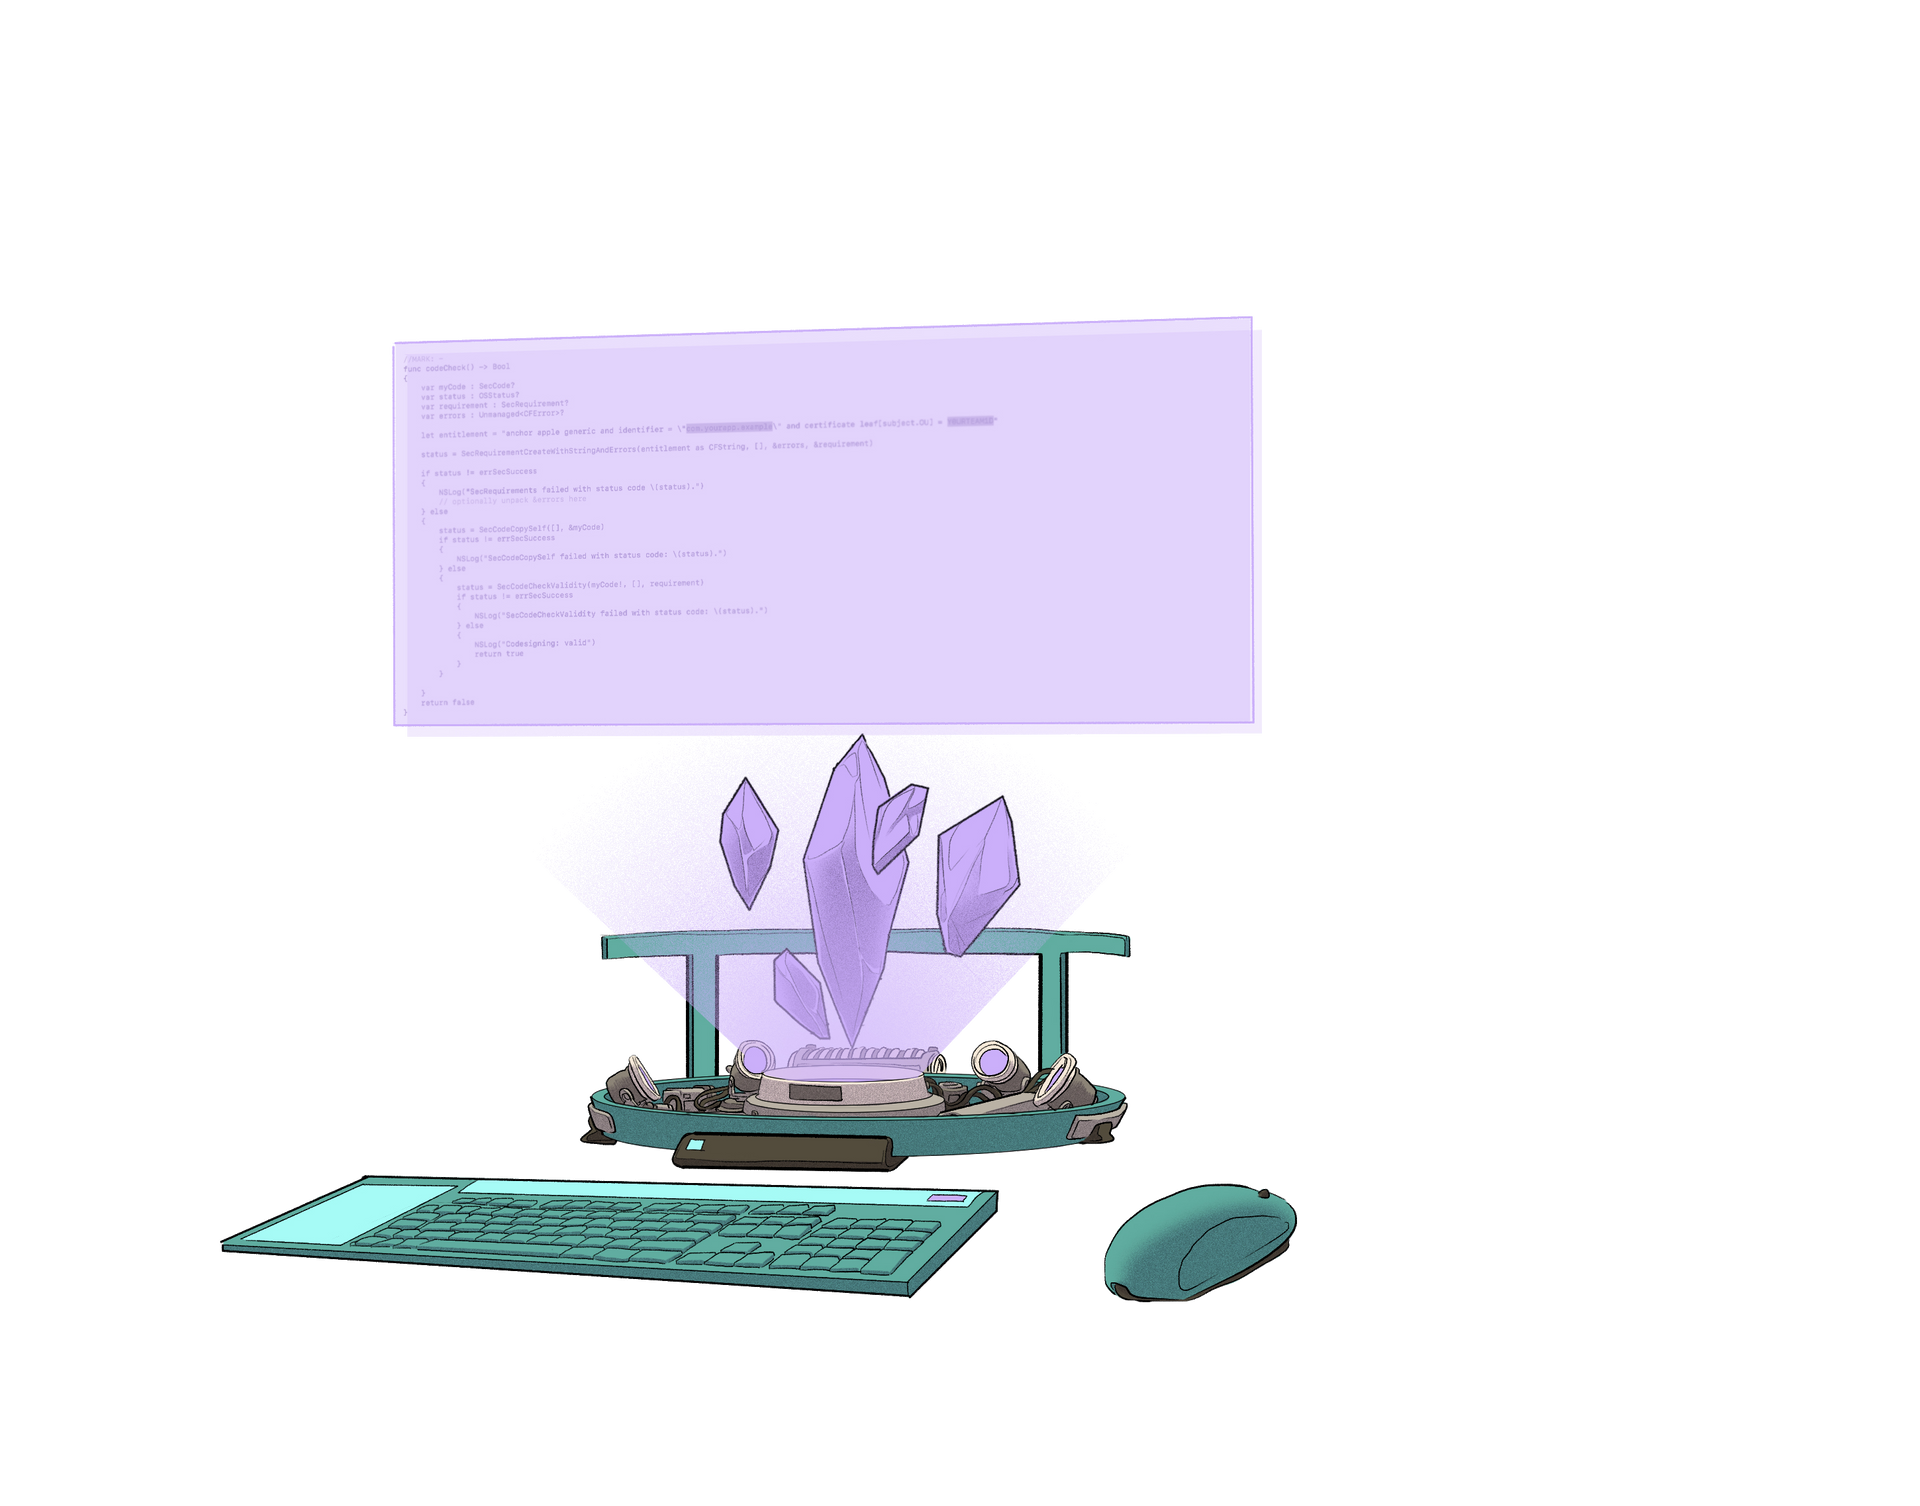 Ilustrație a unui computer futurist, alimentat de cristale Ethereum.